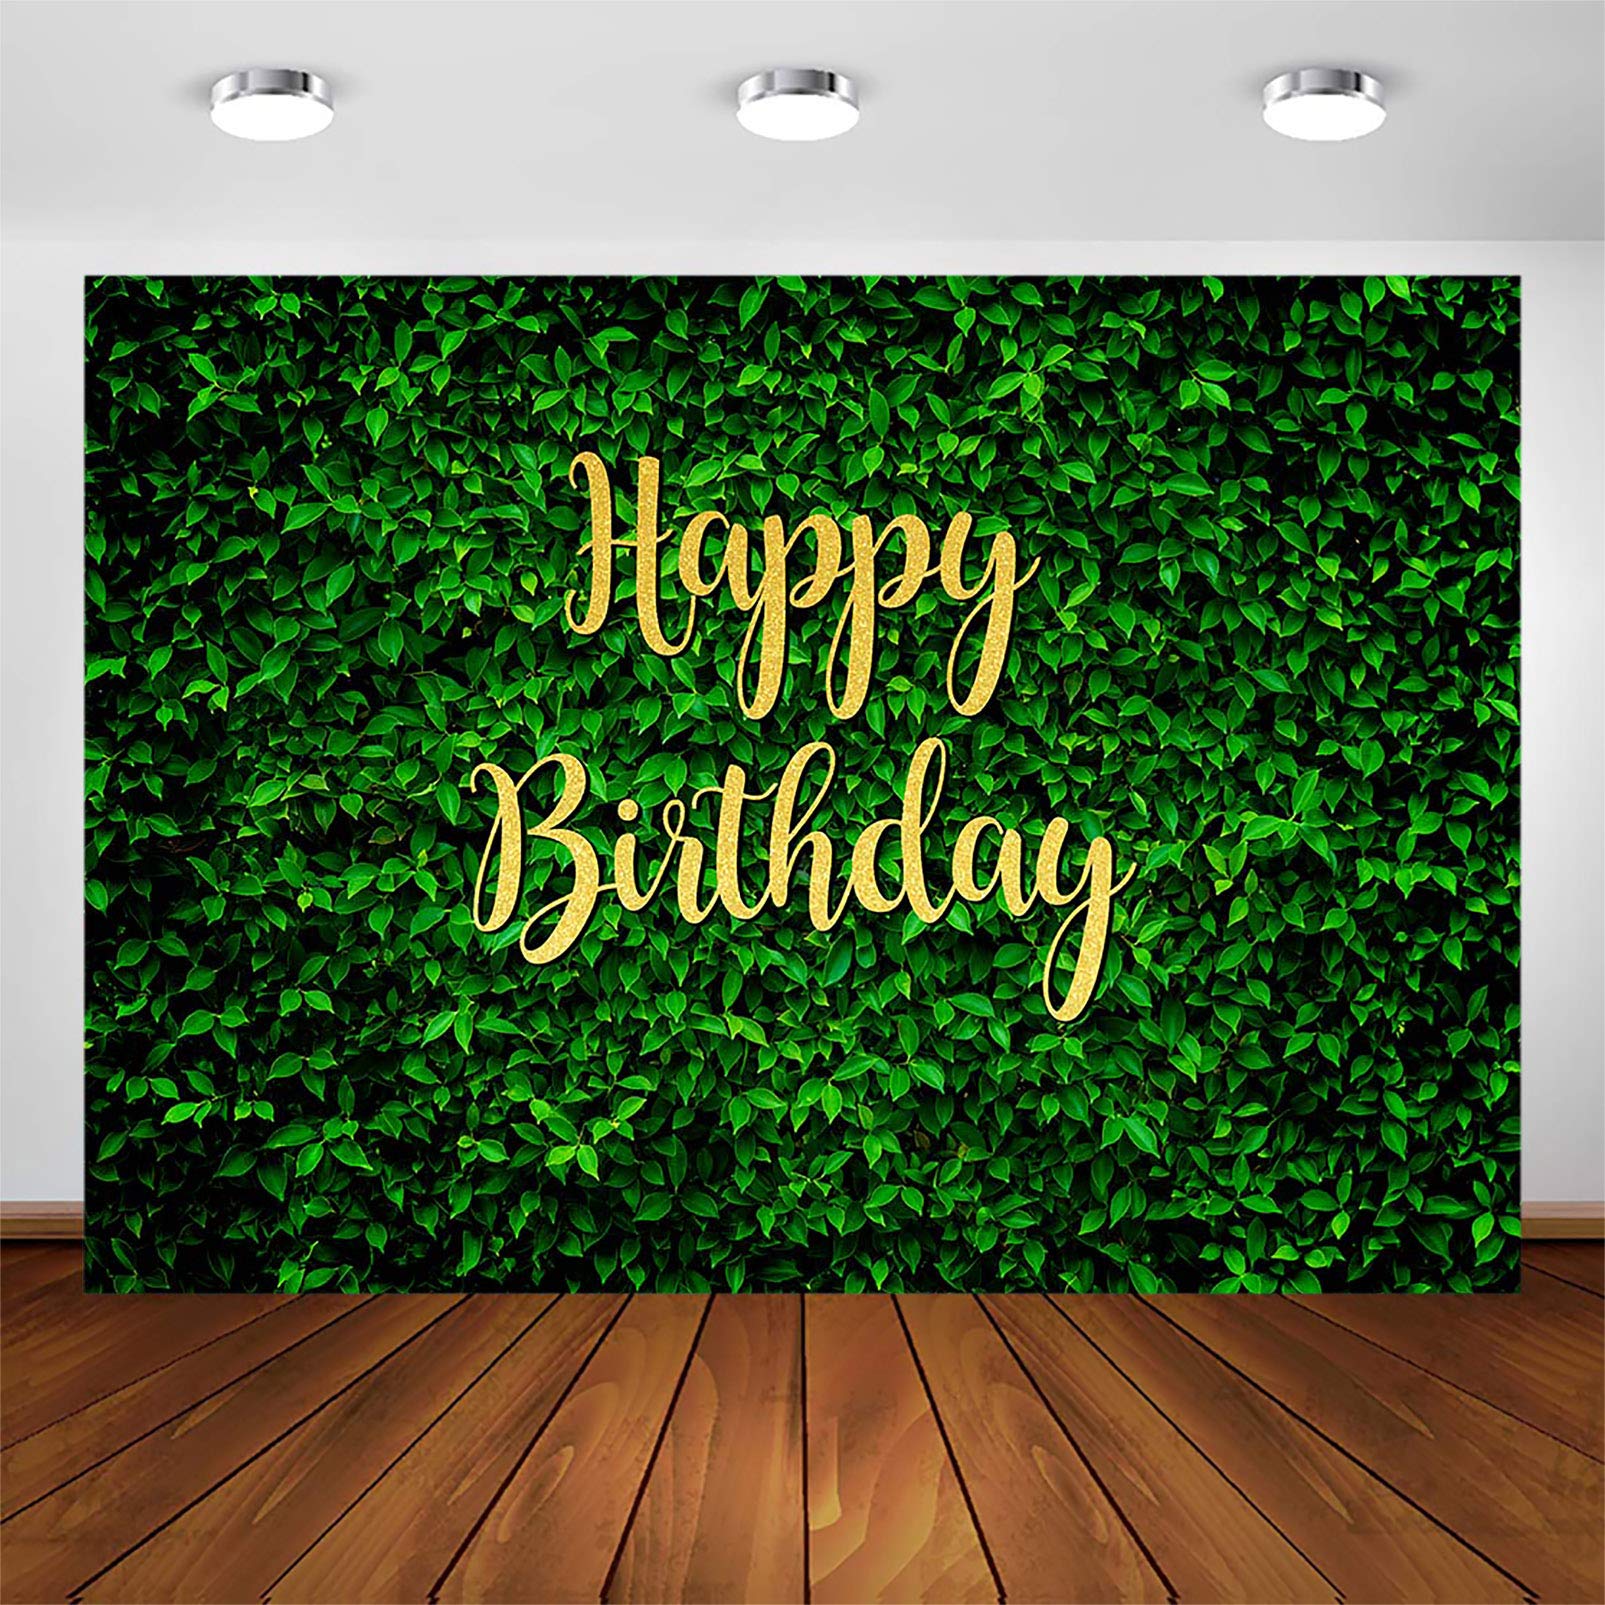 Phông nền sinh nhật với gam màu xanh lá cây tươi sáng sẽ mang đến cho bữa tiệc sinh nhật của bạn một màu sắc và không gian mới lạ. Hãy cùng chiêm ngưỡng những hình ảnh đầy phong cách.